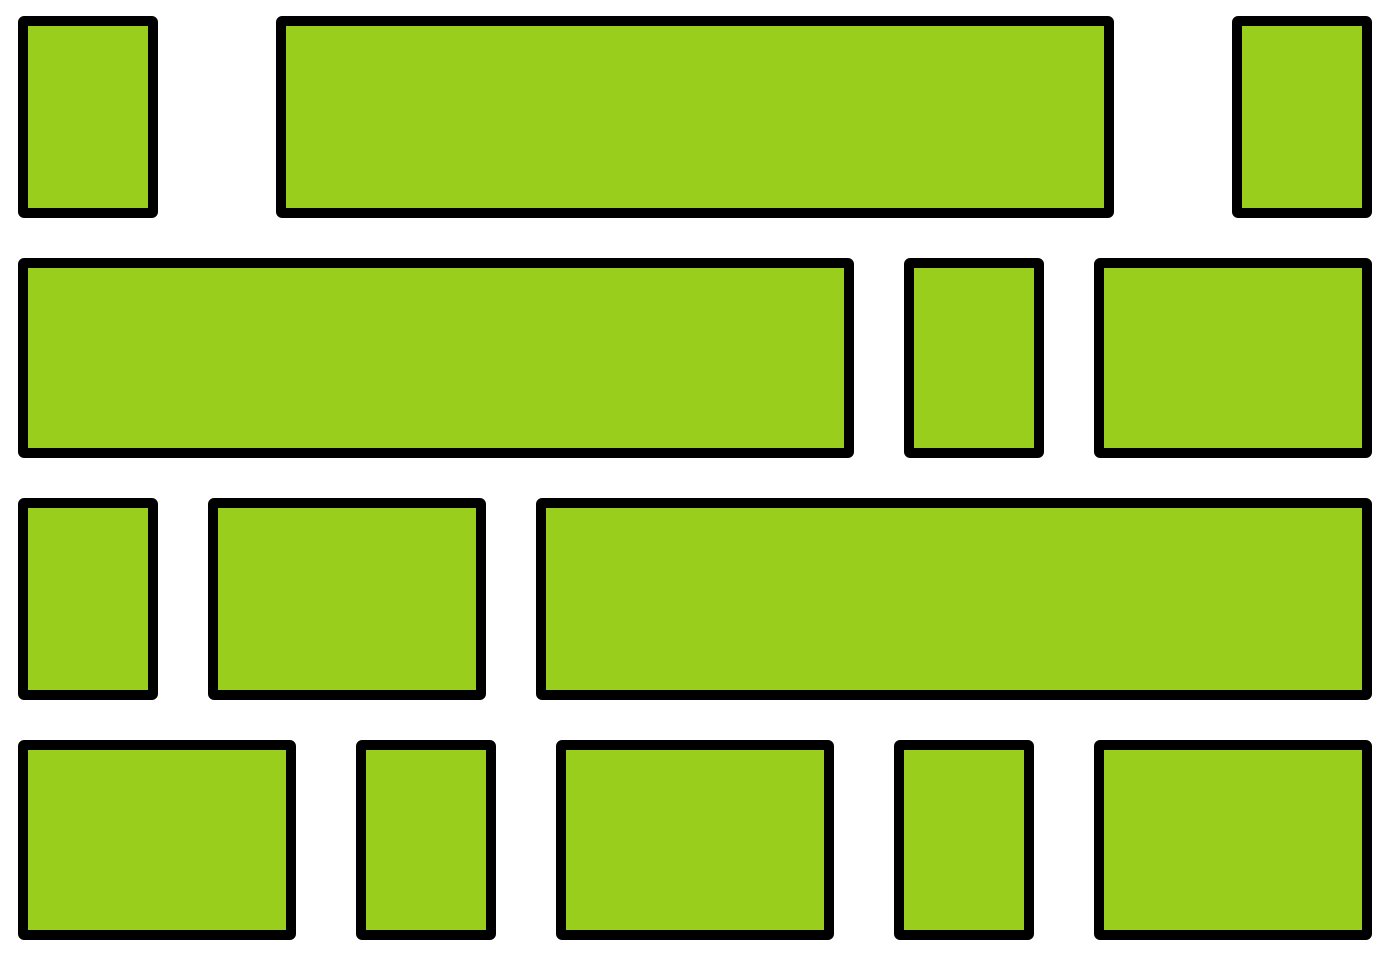 Flexbox example grid